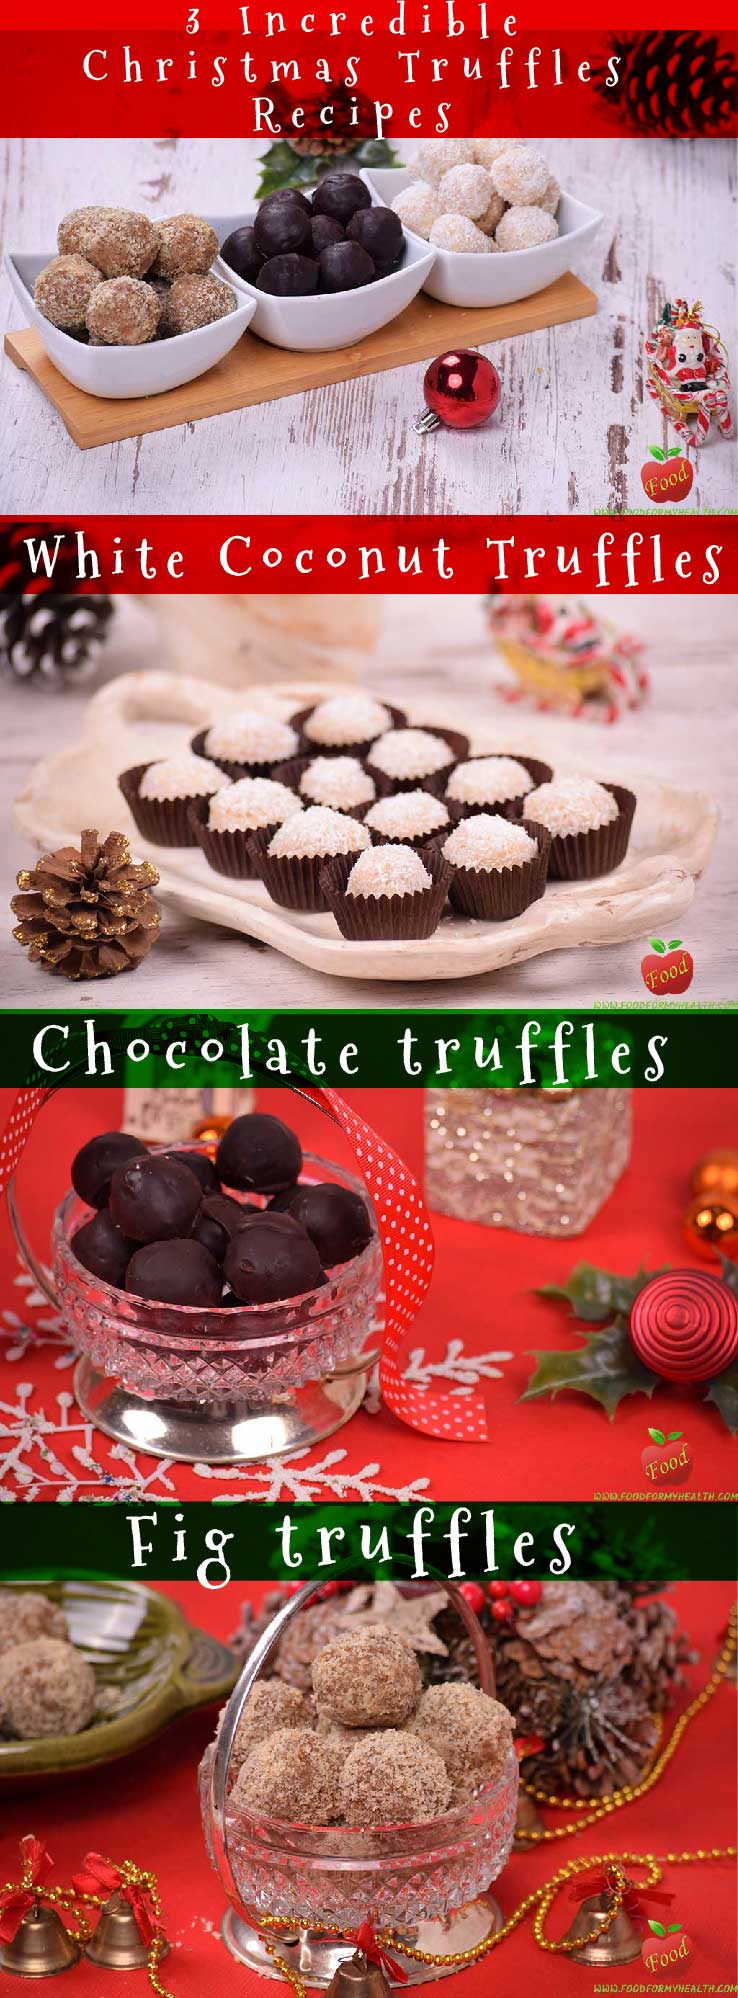 Christmas Truffles Recipes